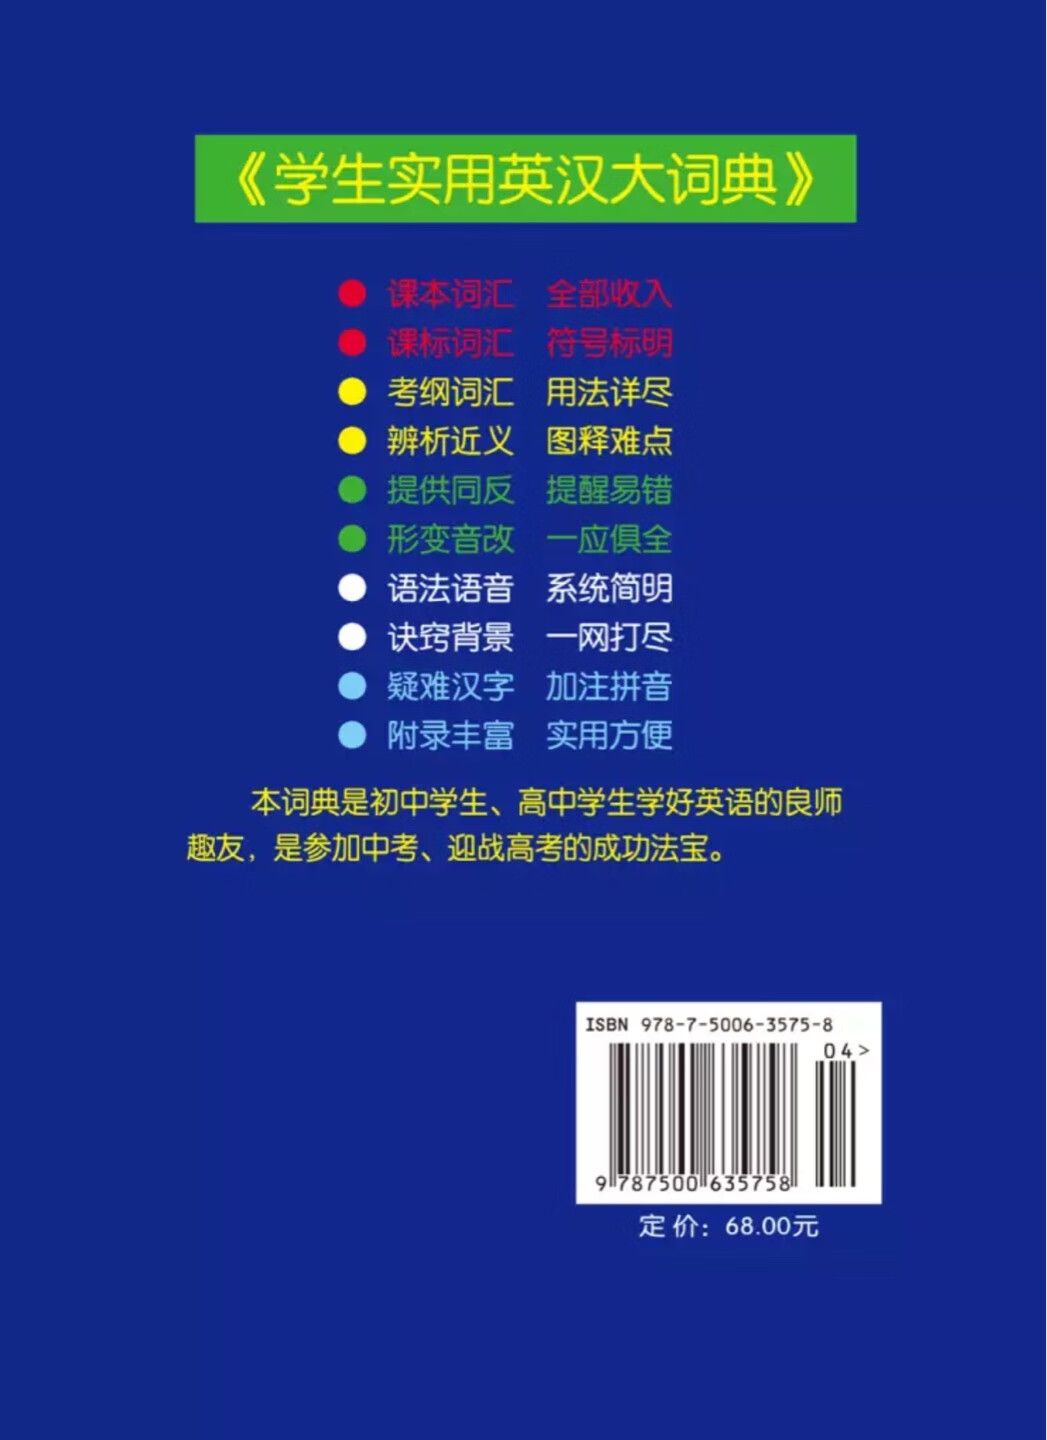 很好很强大的一本英汉大词典，希望对孩子有帮助！